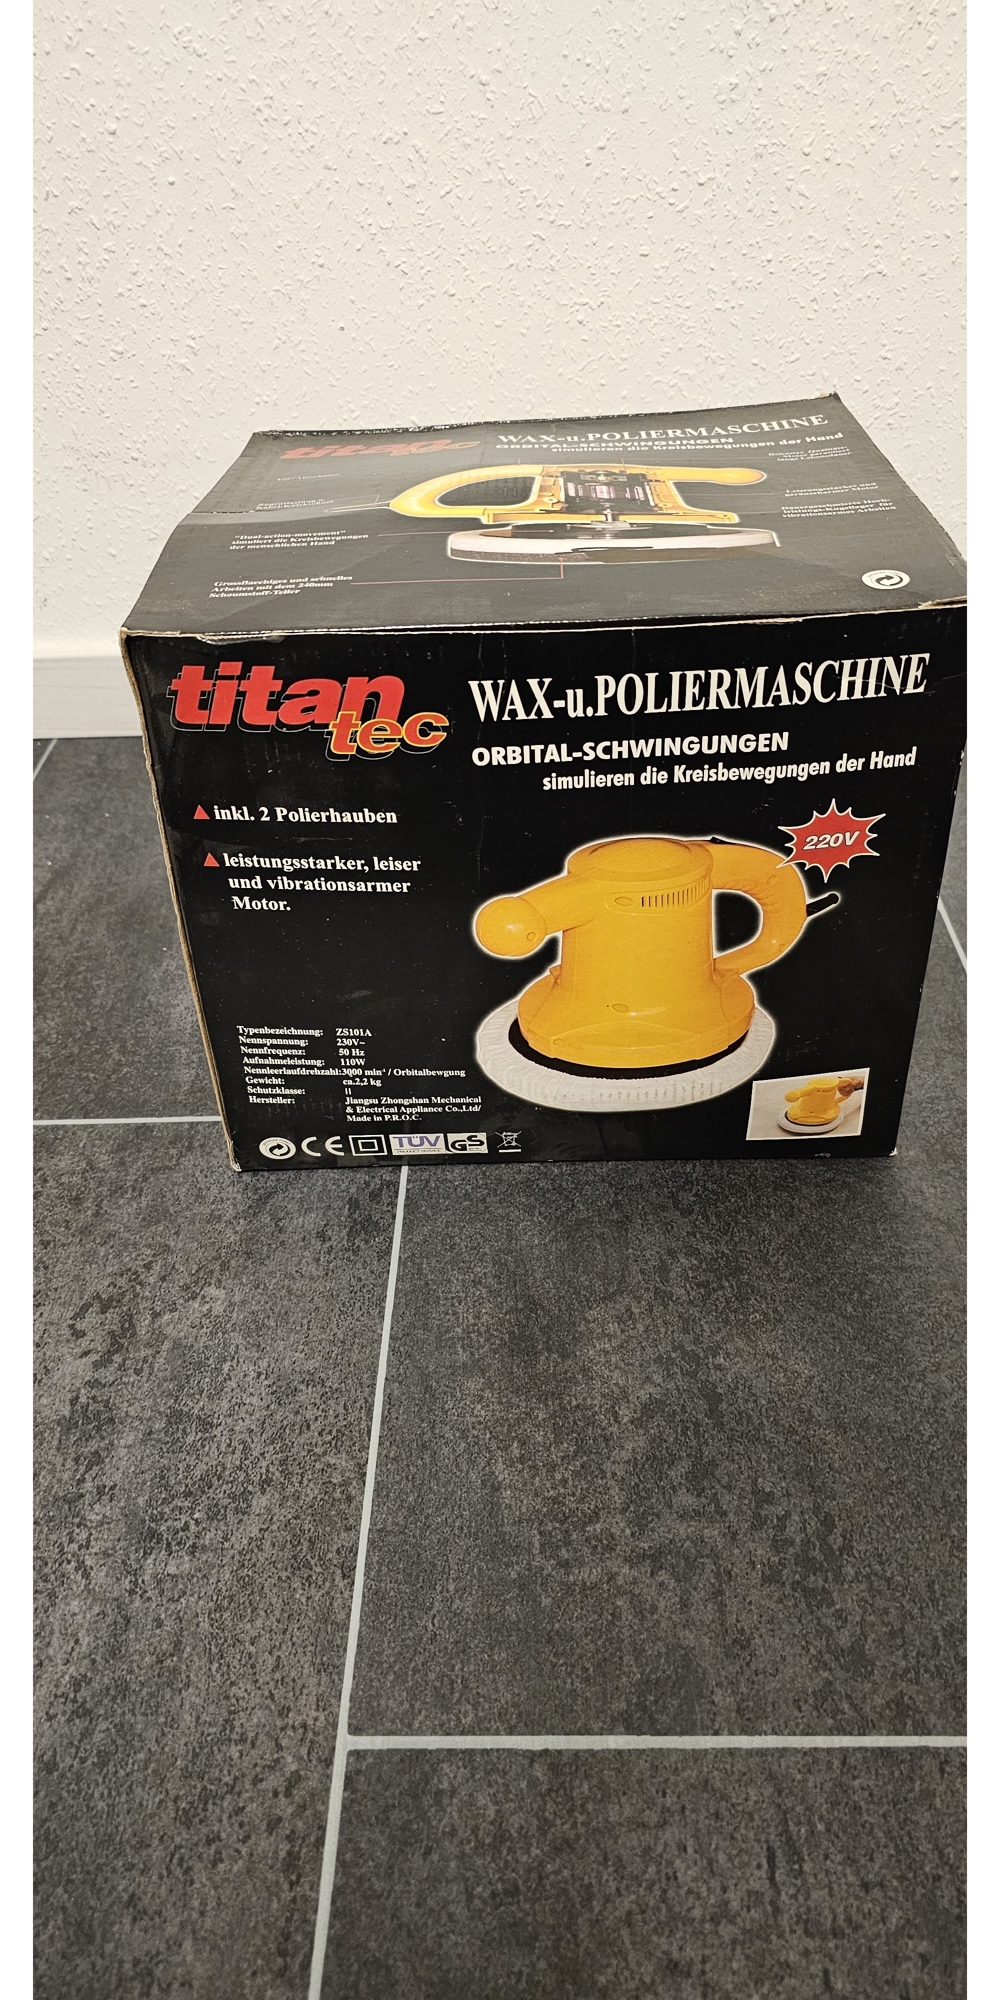 Wachs-und Poliermaschine Titan tec neu, in Originalverpackung